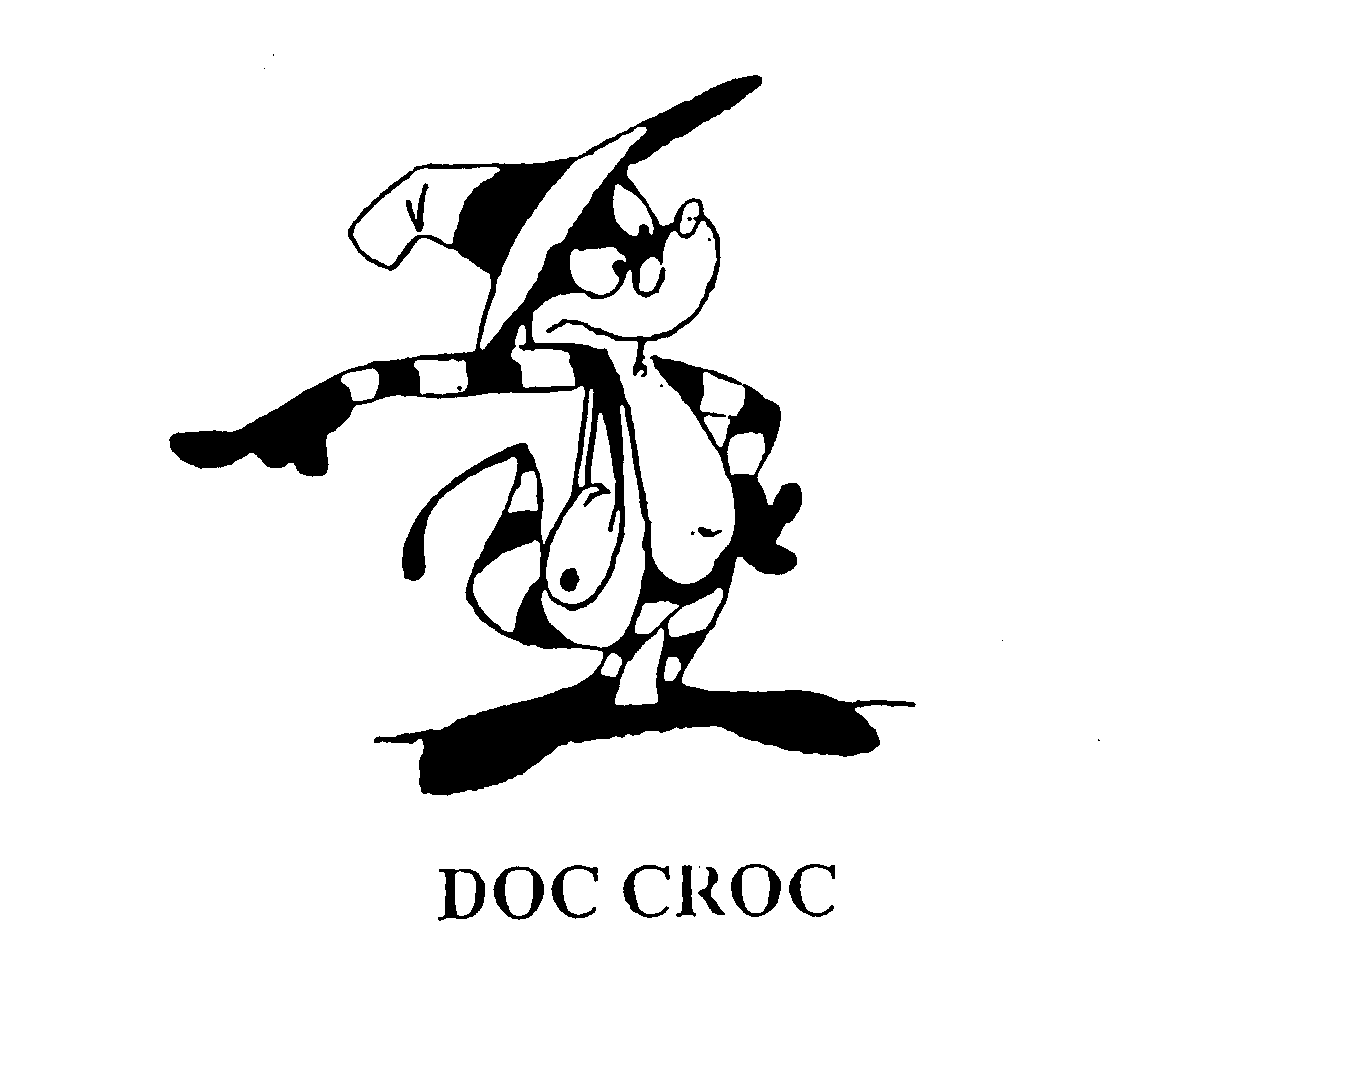  DOC CROC